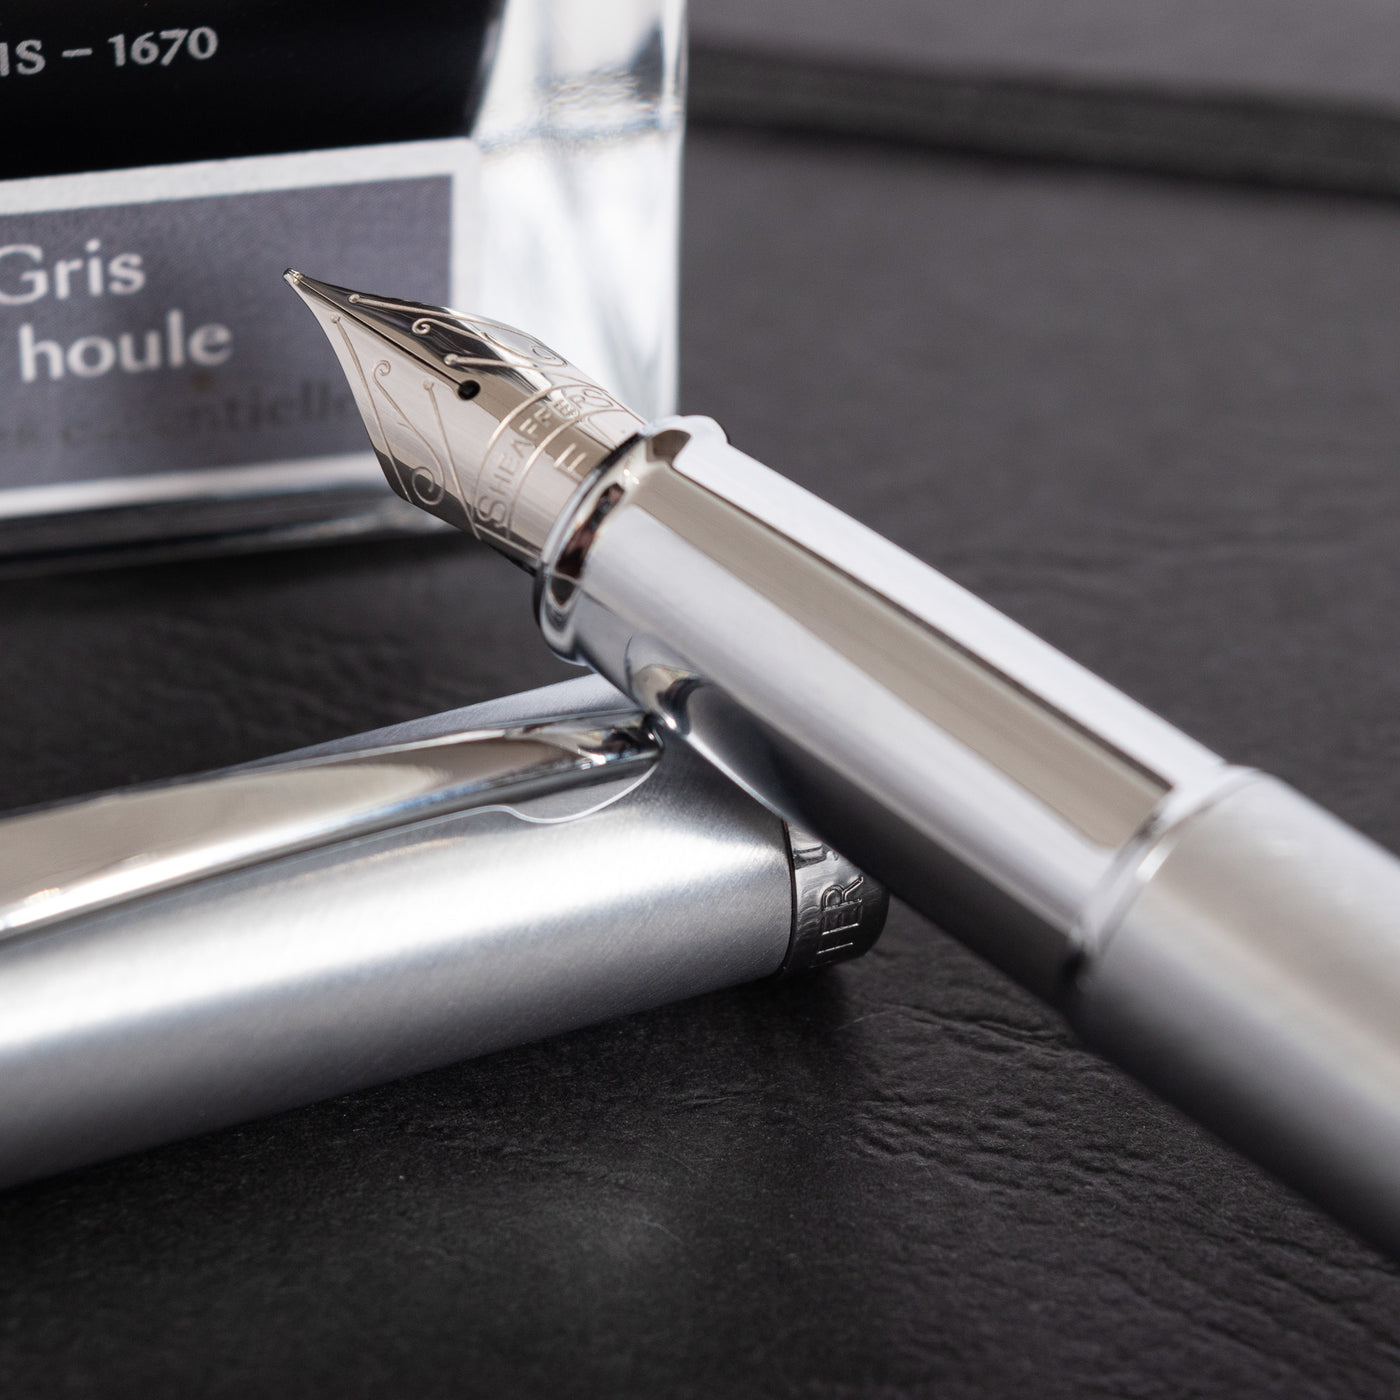 Sheaffer 100 Fountain Pen - Brushed Chrome stainless steel nib